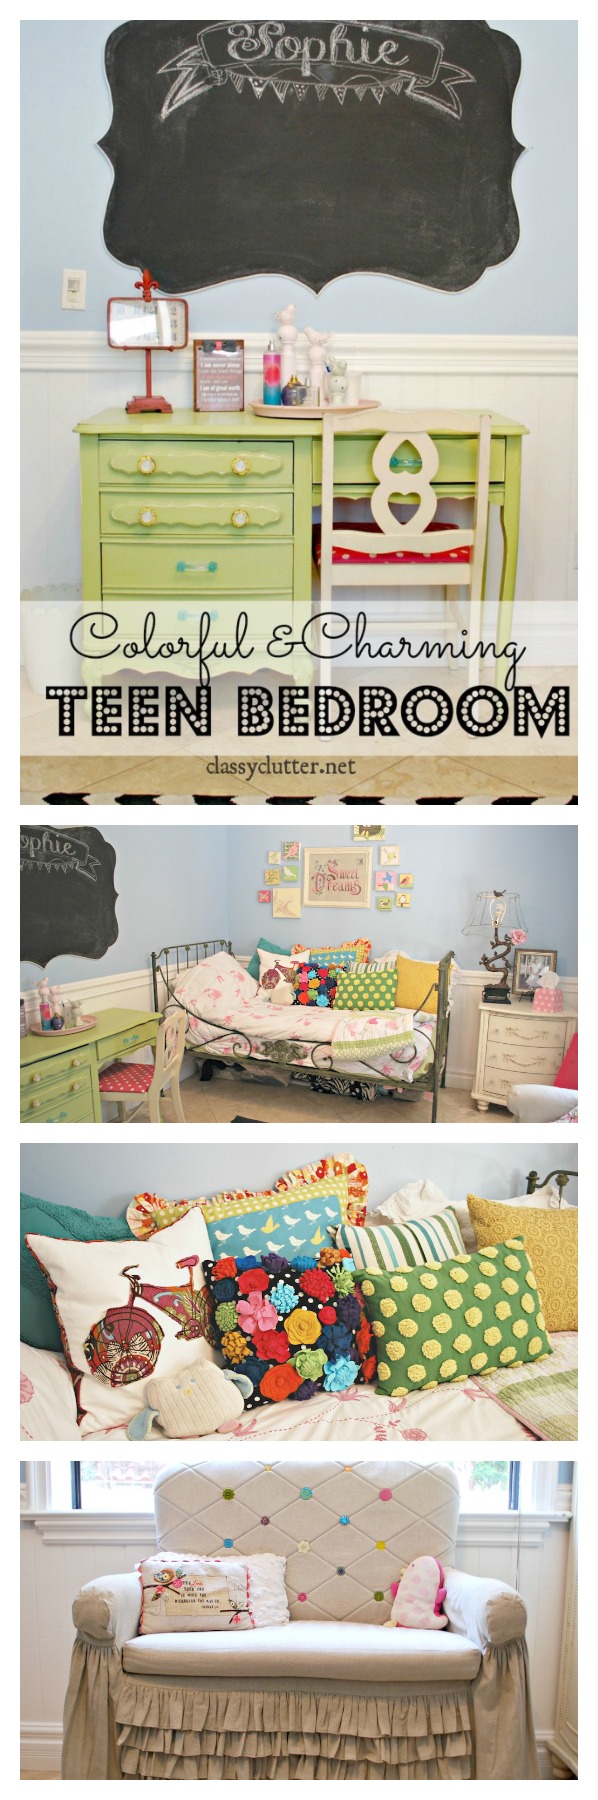 Teen Room